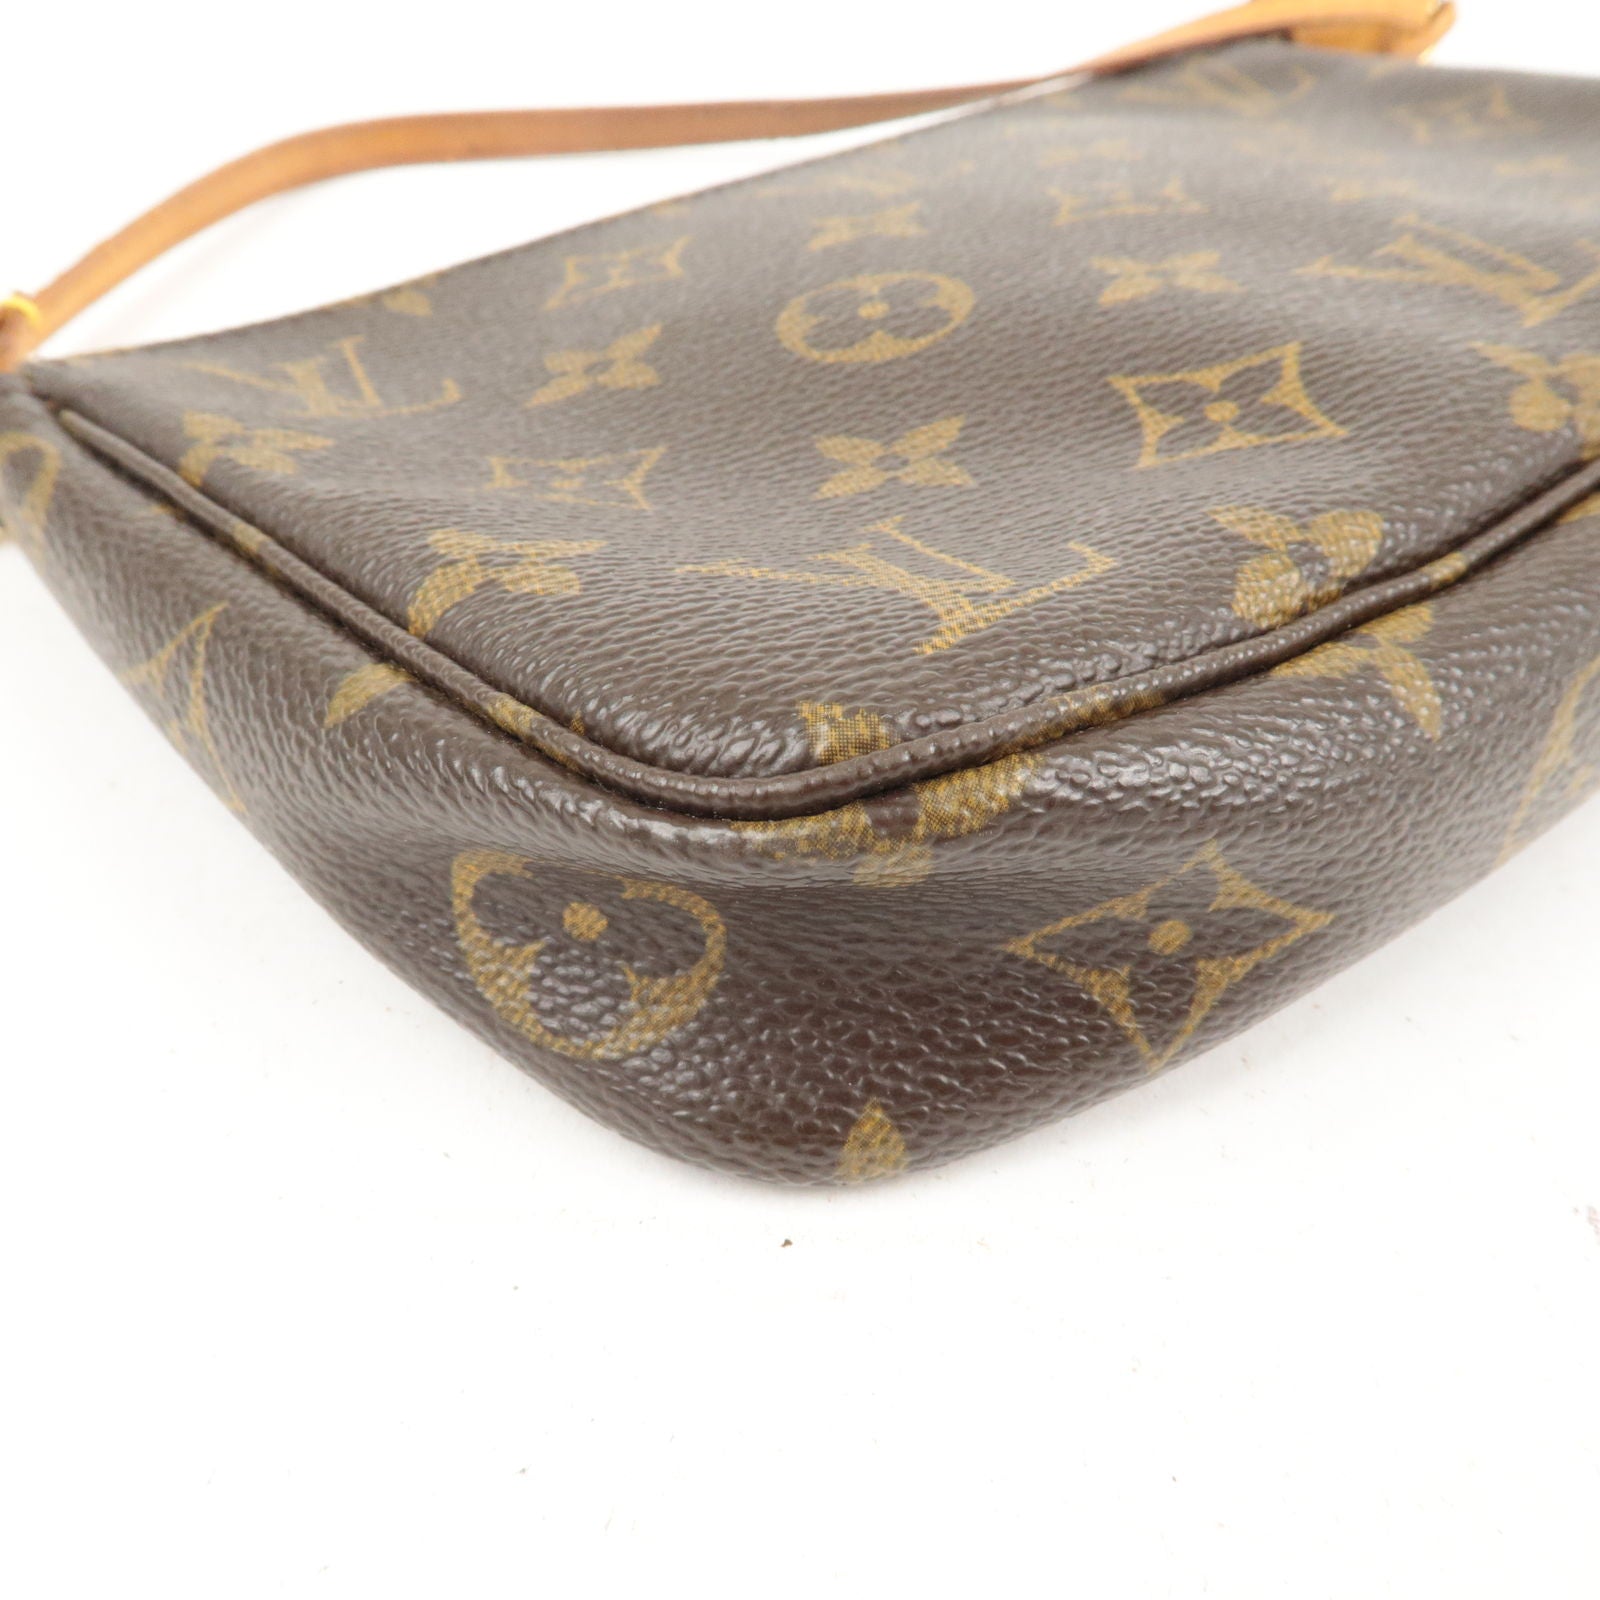 Louis Vuitton Monogram Pochette Cite - Brown Shoulder Bags